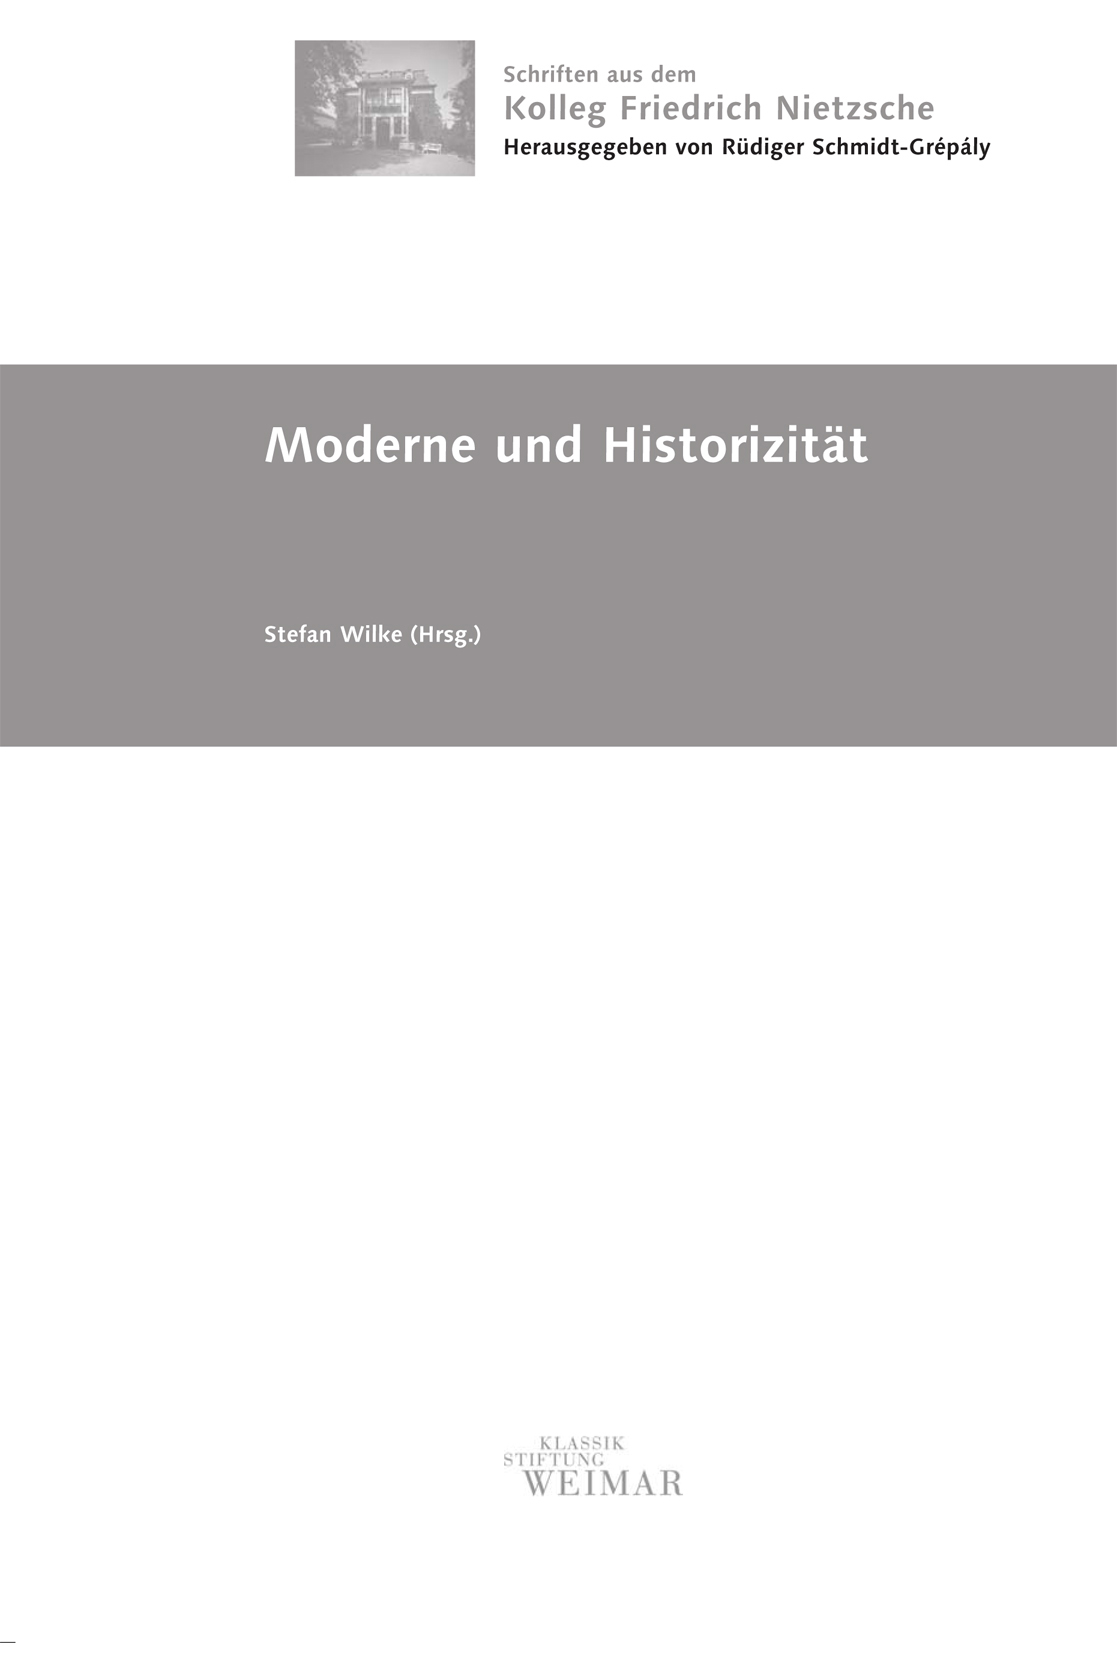 Moderne und Historizität, Bild: Titelblatt.